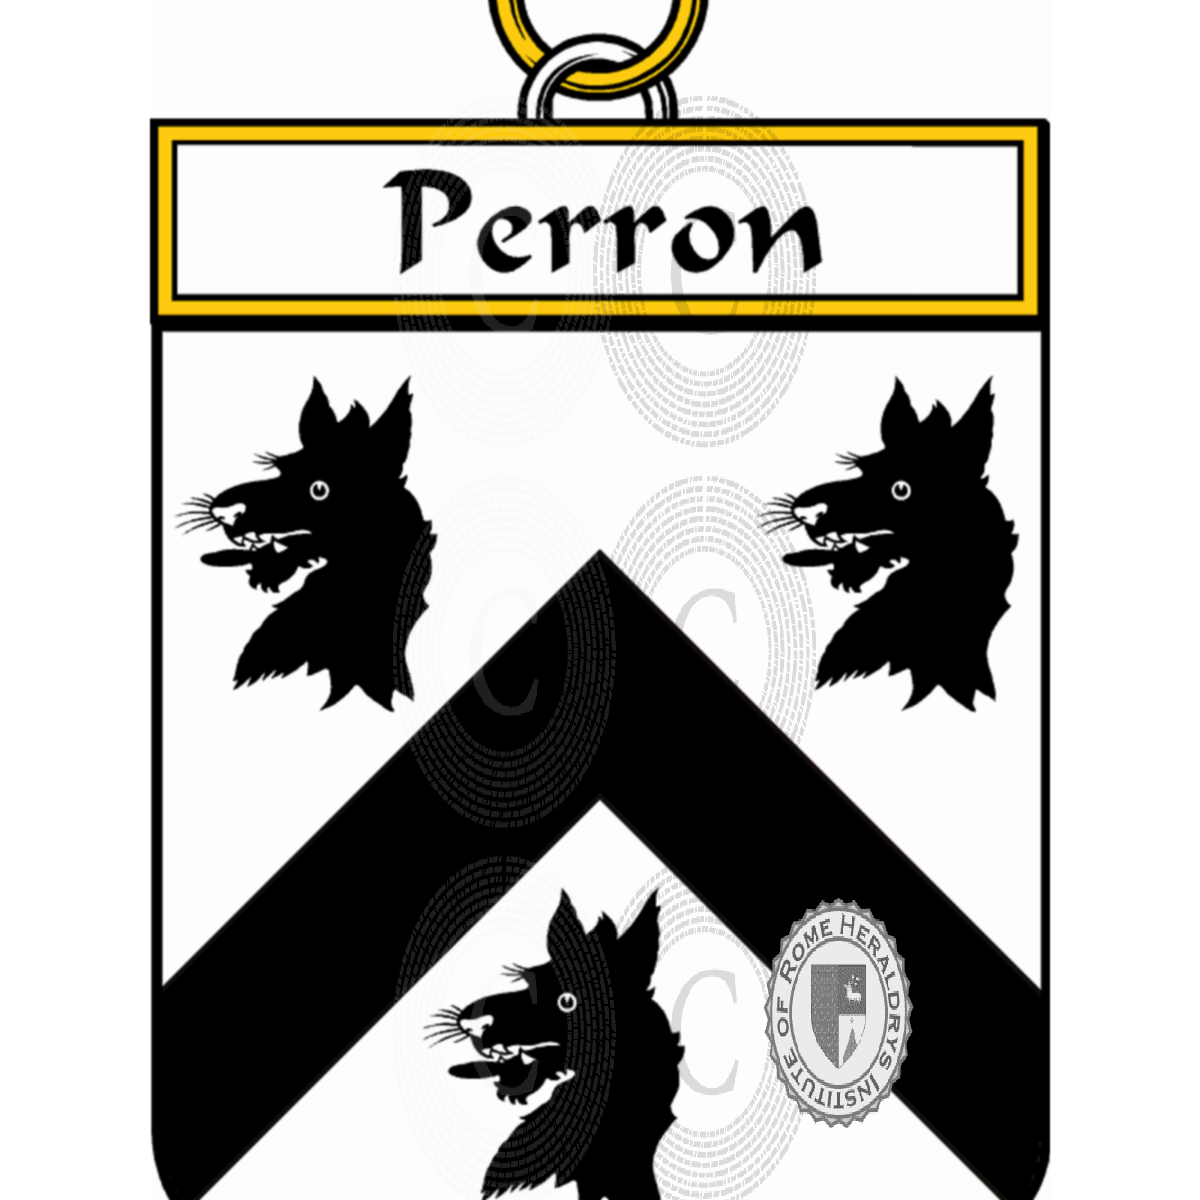 Stemma della famigliaPerron de La Fontaine-Ménard, du Perron,Perron de La Fontaine-Ménard